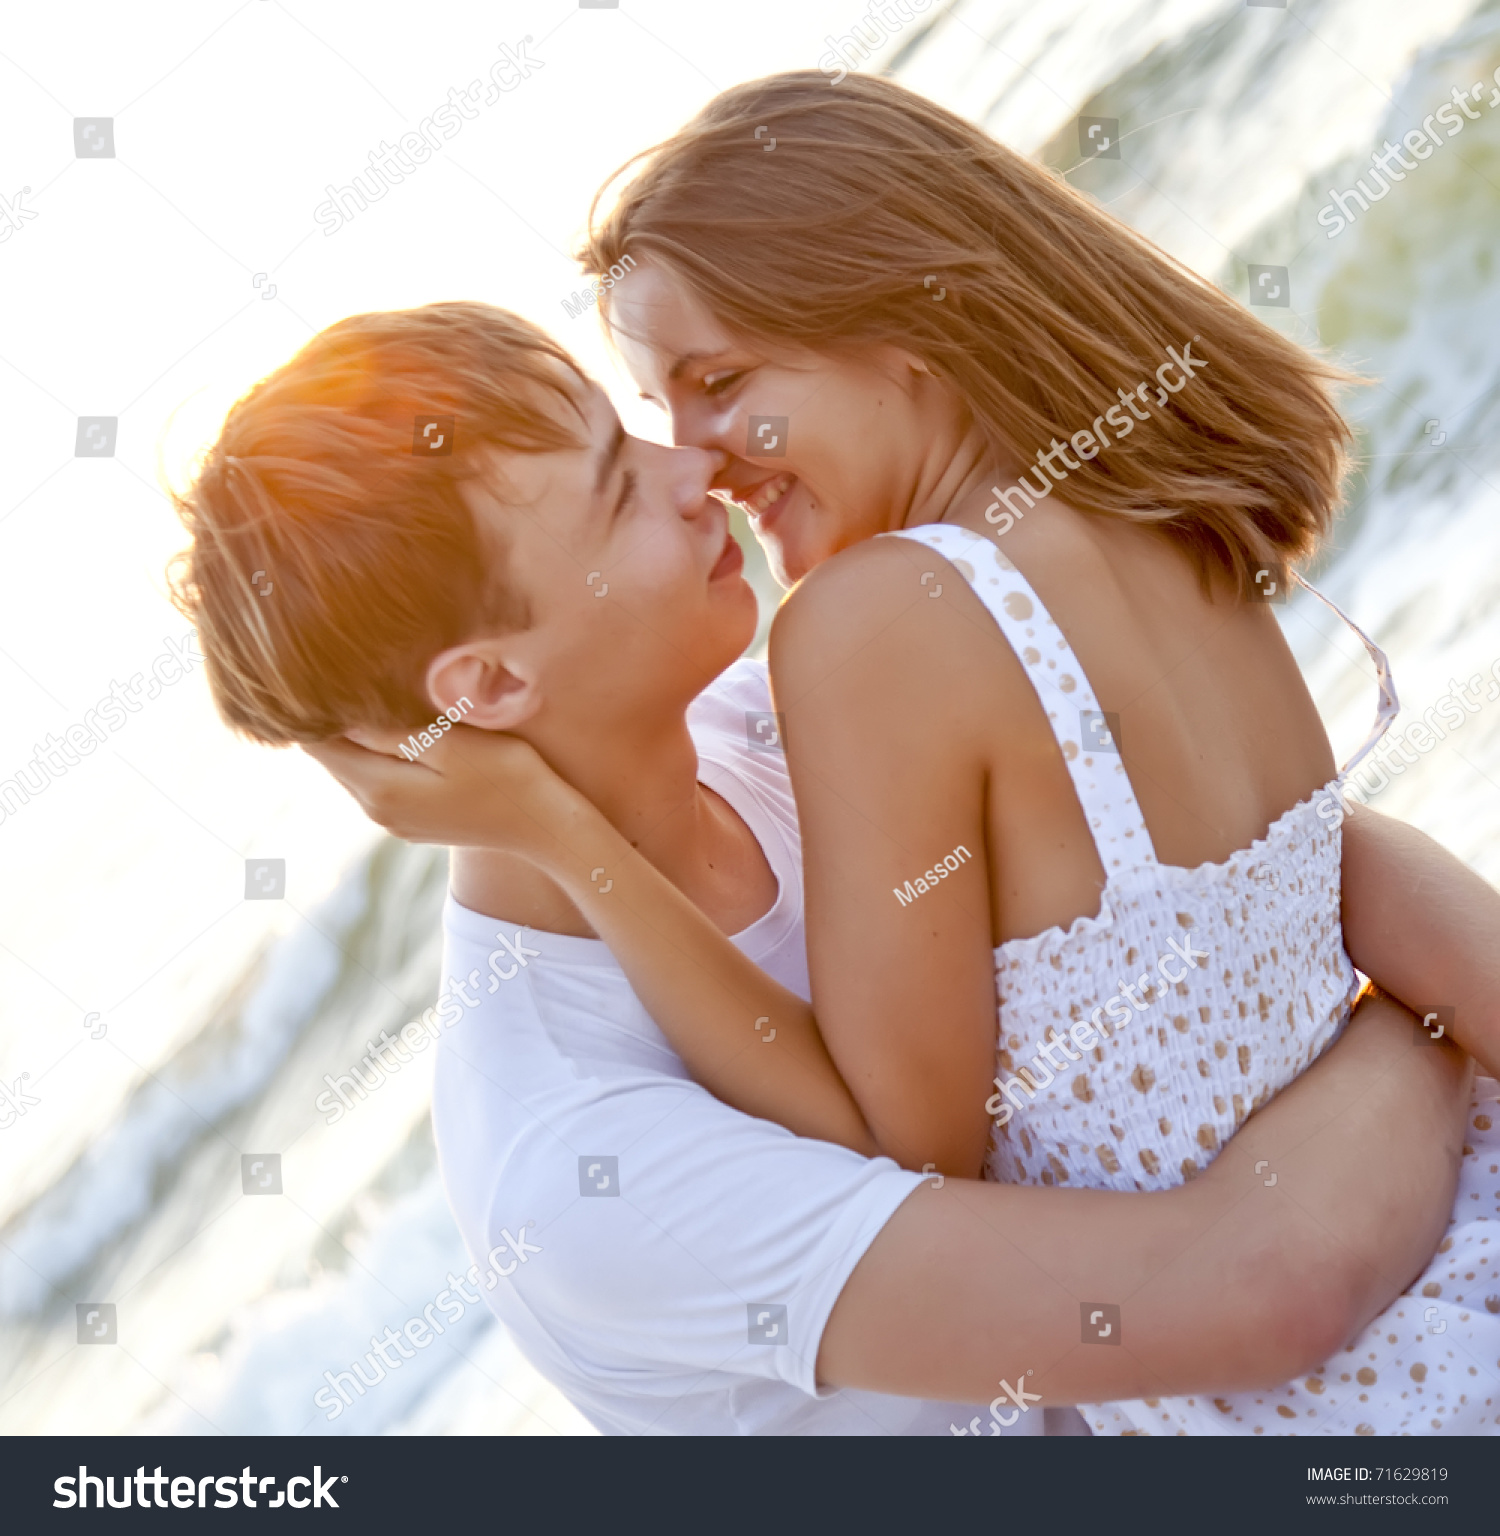 показать видео как голая девочка целуется с мальчиком фото 69